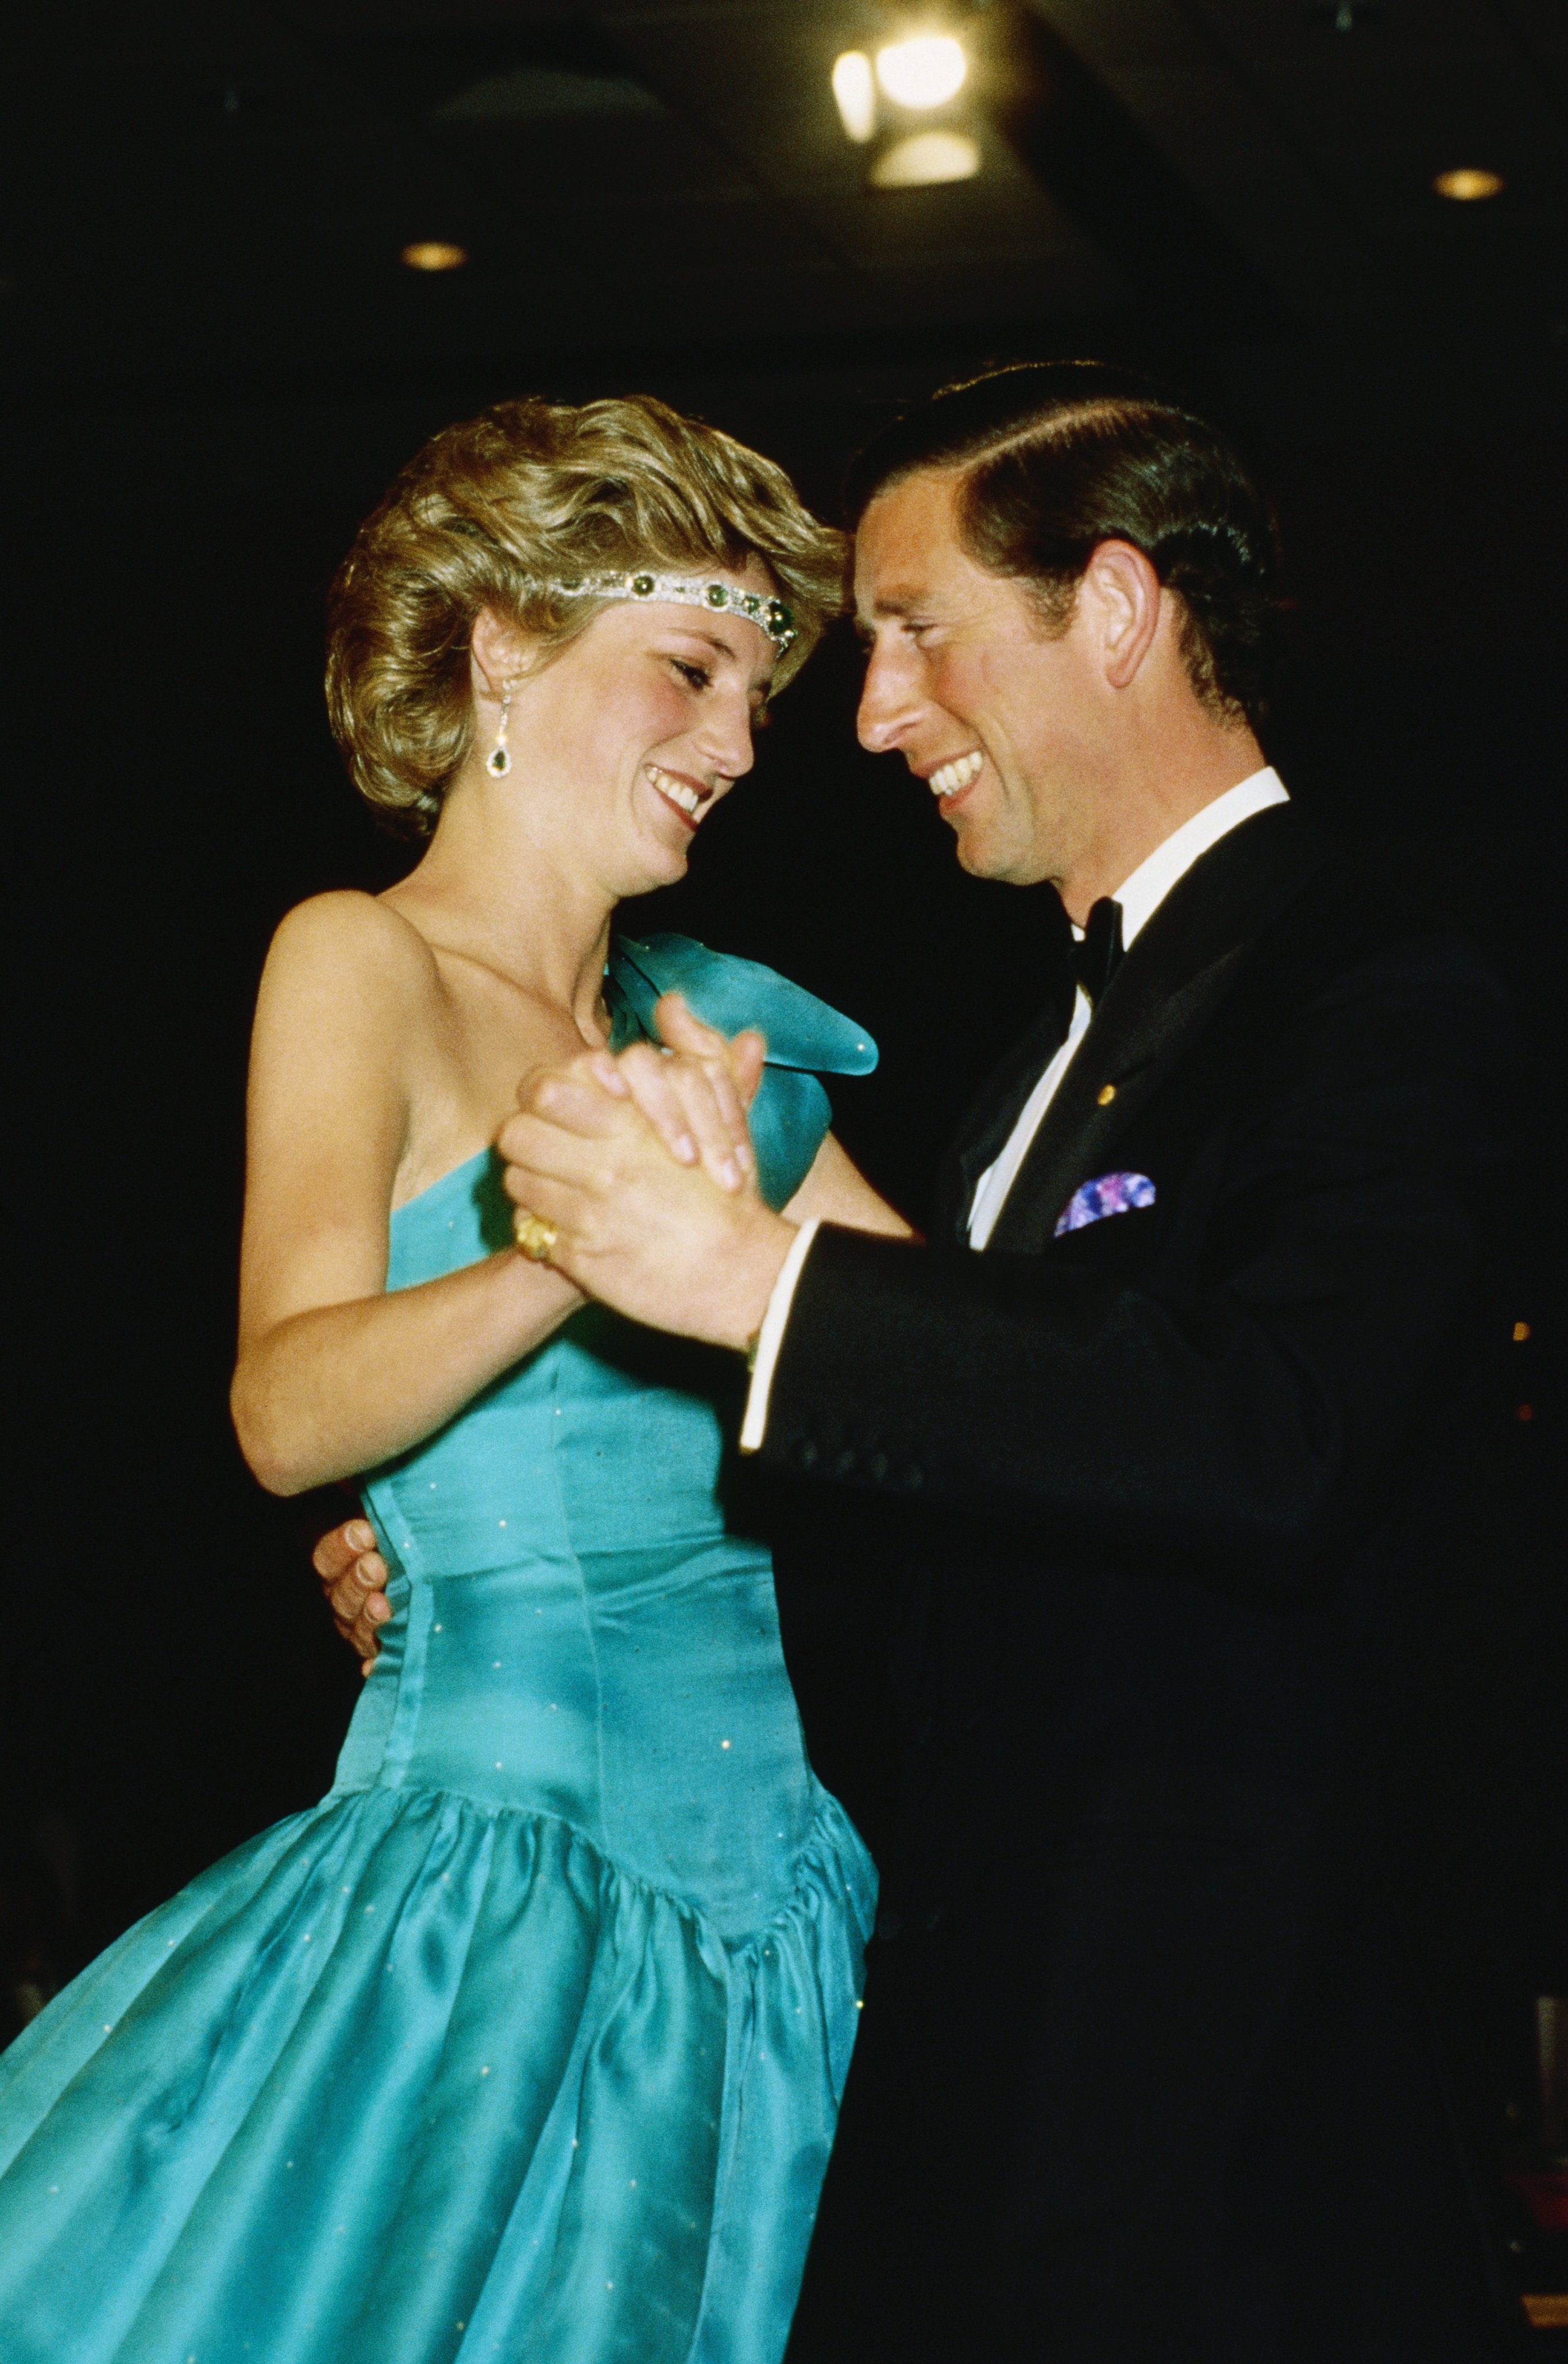 Prinzessin Diana und der Prinz von Wales, Charles, lächeln beim Tanzen auf einer feierlichen Veranstaltung | Quelle: Getty Images